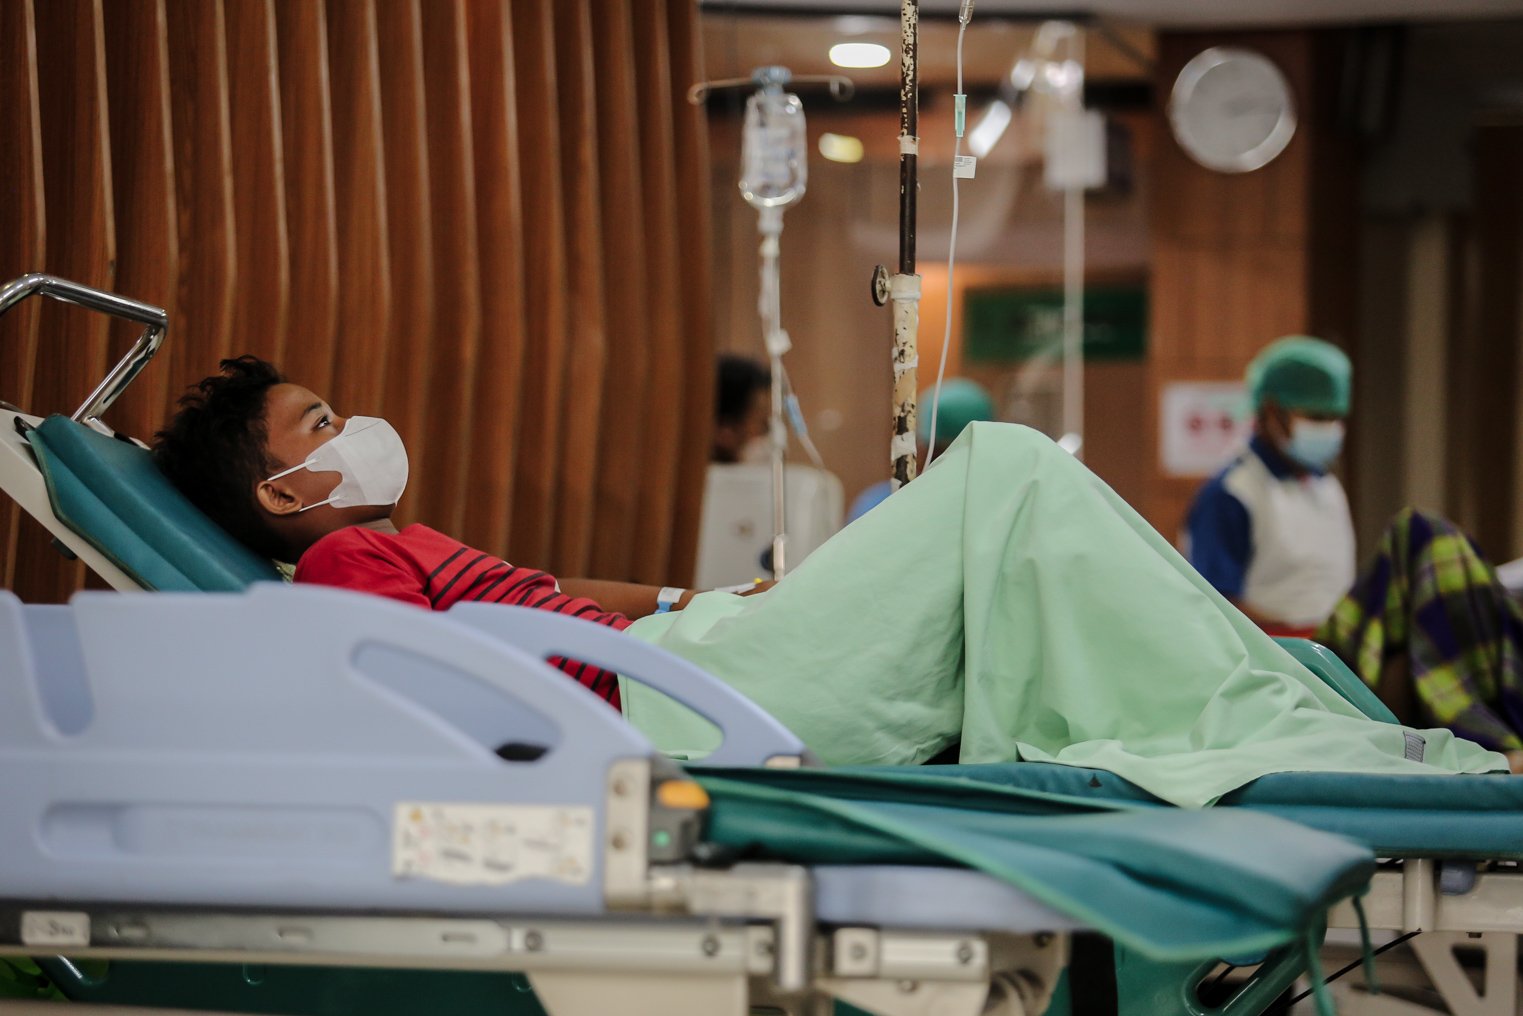 Pasien berbaring menunggu hasil skrining sebelum dipindahkan ke ruang isolasi di Rumah Sakit Umum Daerah (RSUD) Chasbullah Abdulmadjid, Kota Bekasi, Jawa Barat, Jumat (4/2/2022). Tingkat keterisian rumah sakit di rumah sakit rujukan Covid-19 di Bekasi mencapai 41 persen. Total kasus aktif Covid-19 di Kota Bekasi kini mencapai sekitar 5.853.